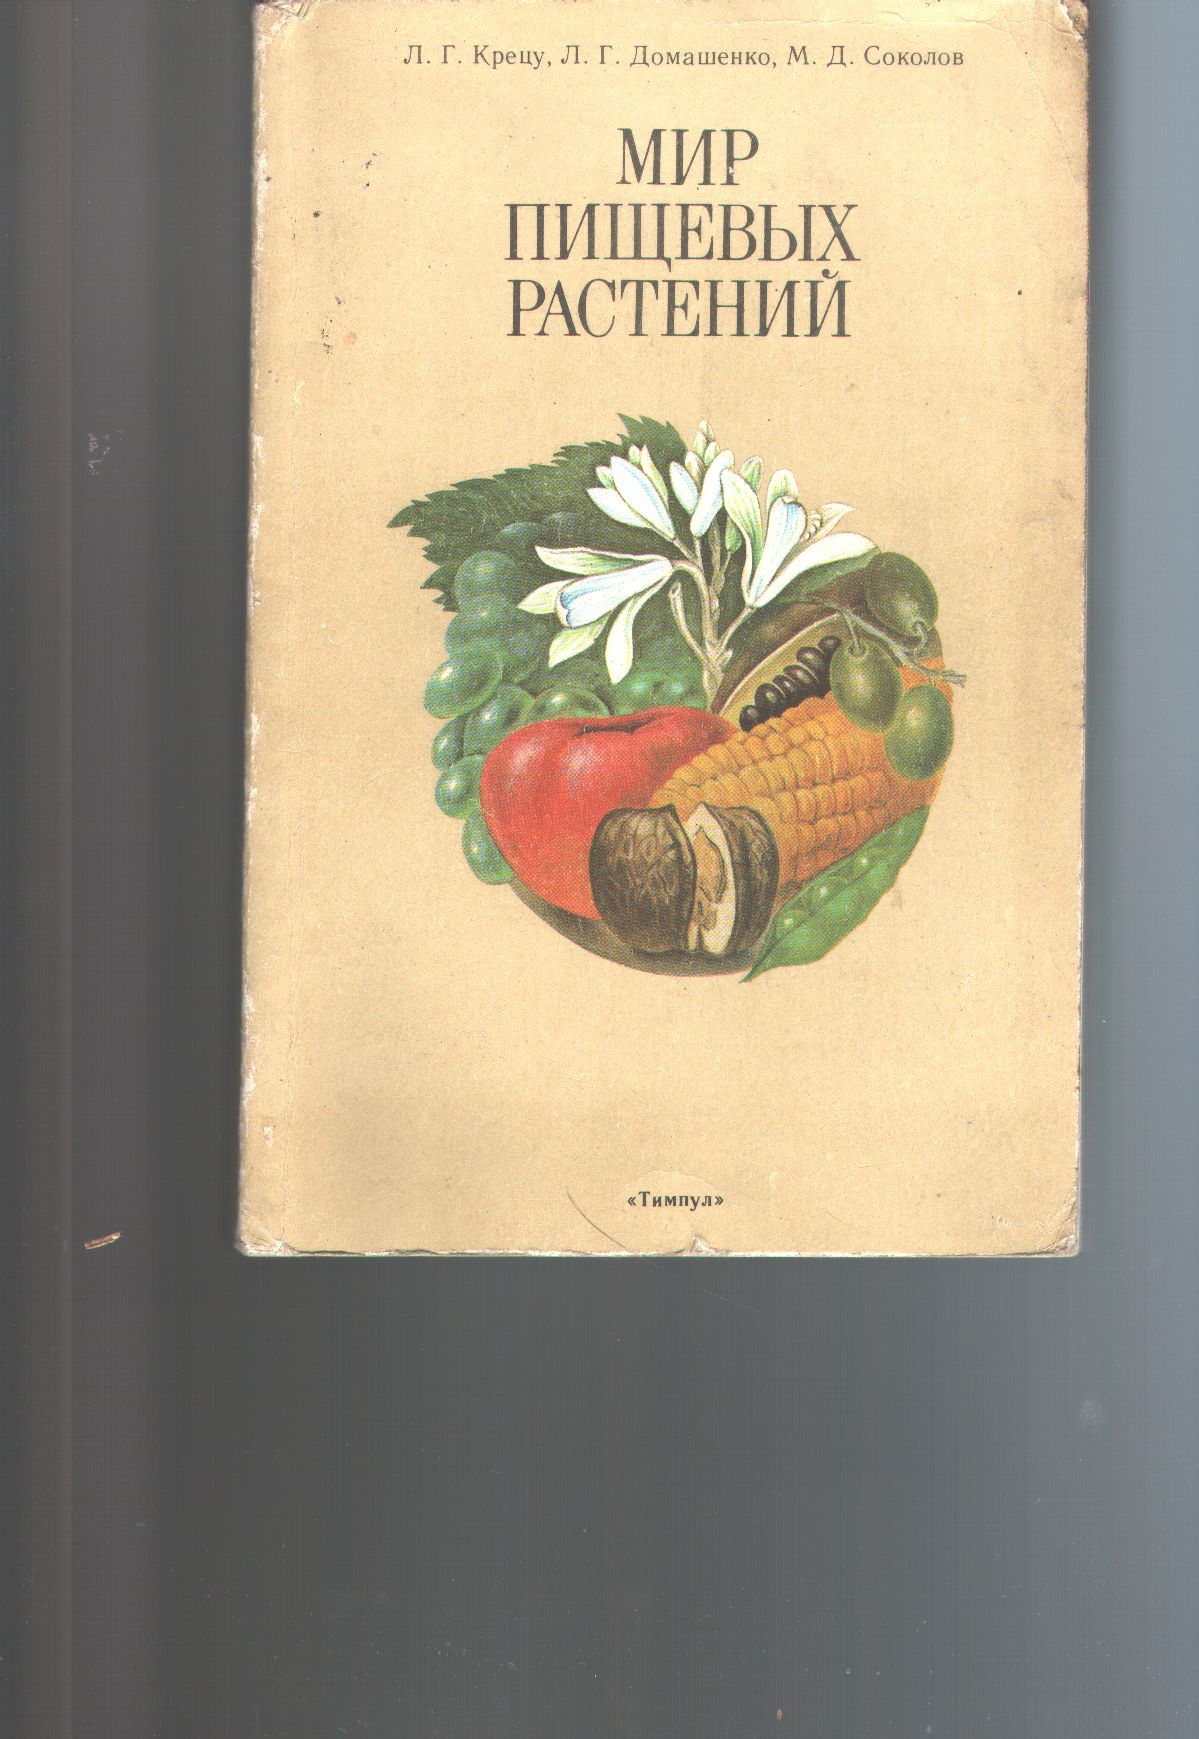 "."  mir pishchevykh rasteniy  (Weltnahrungspflanzen russischsprachig!) 